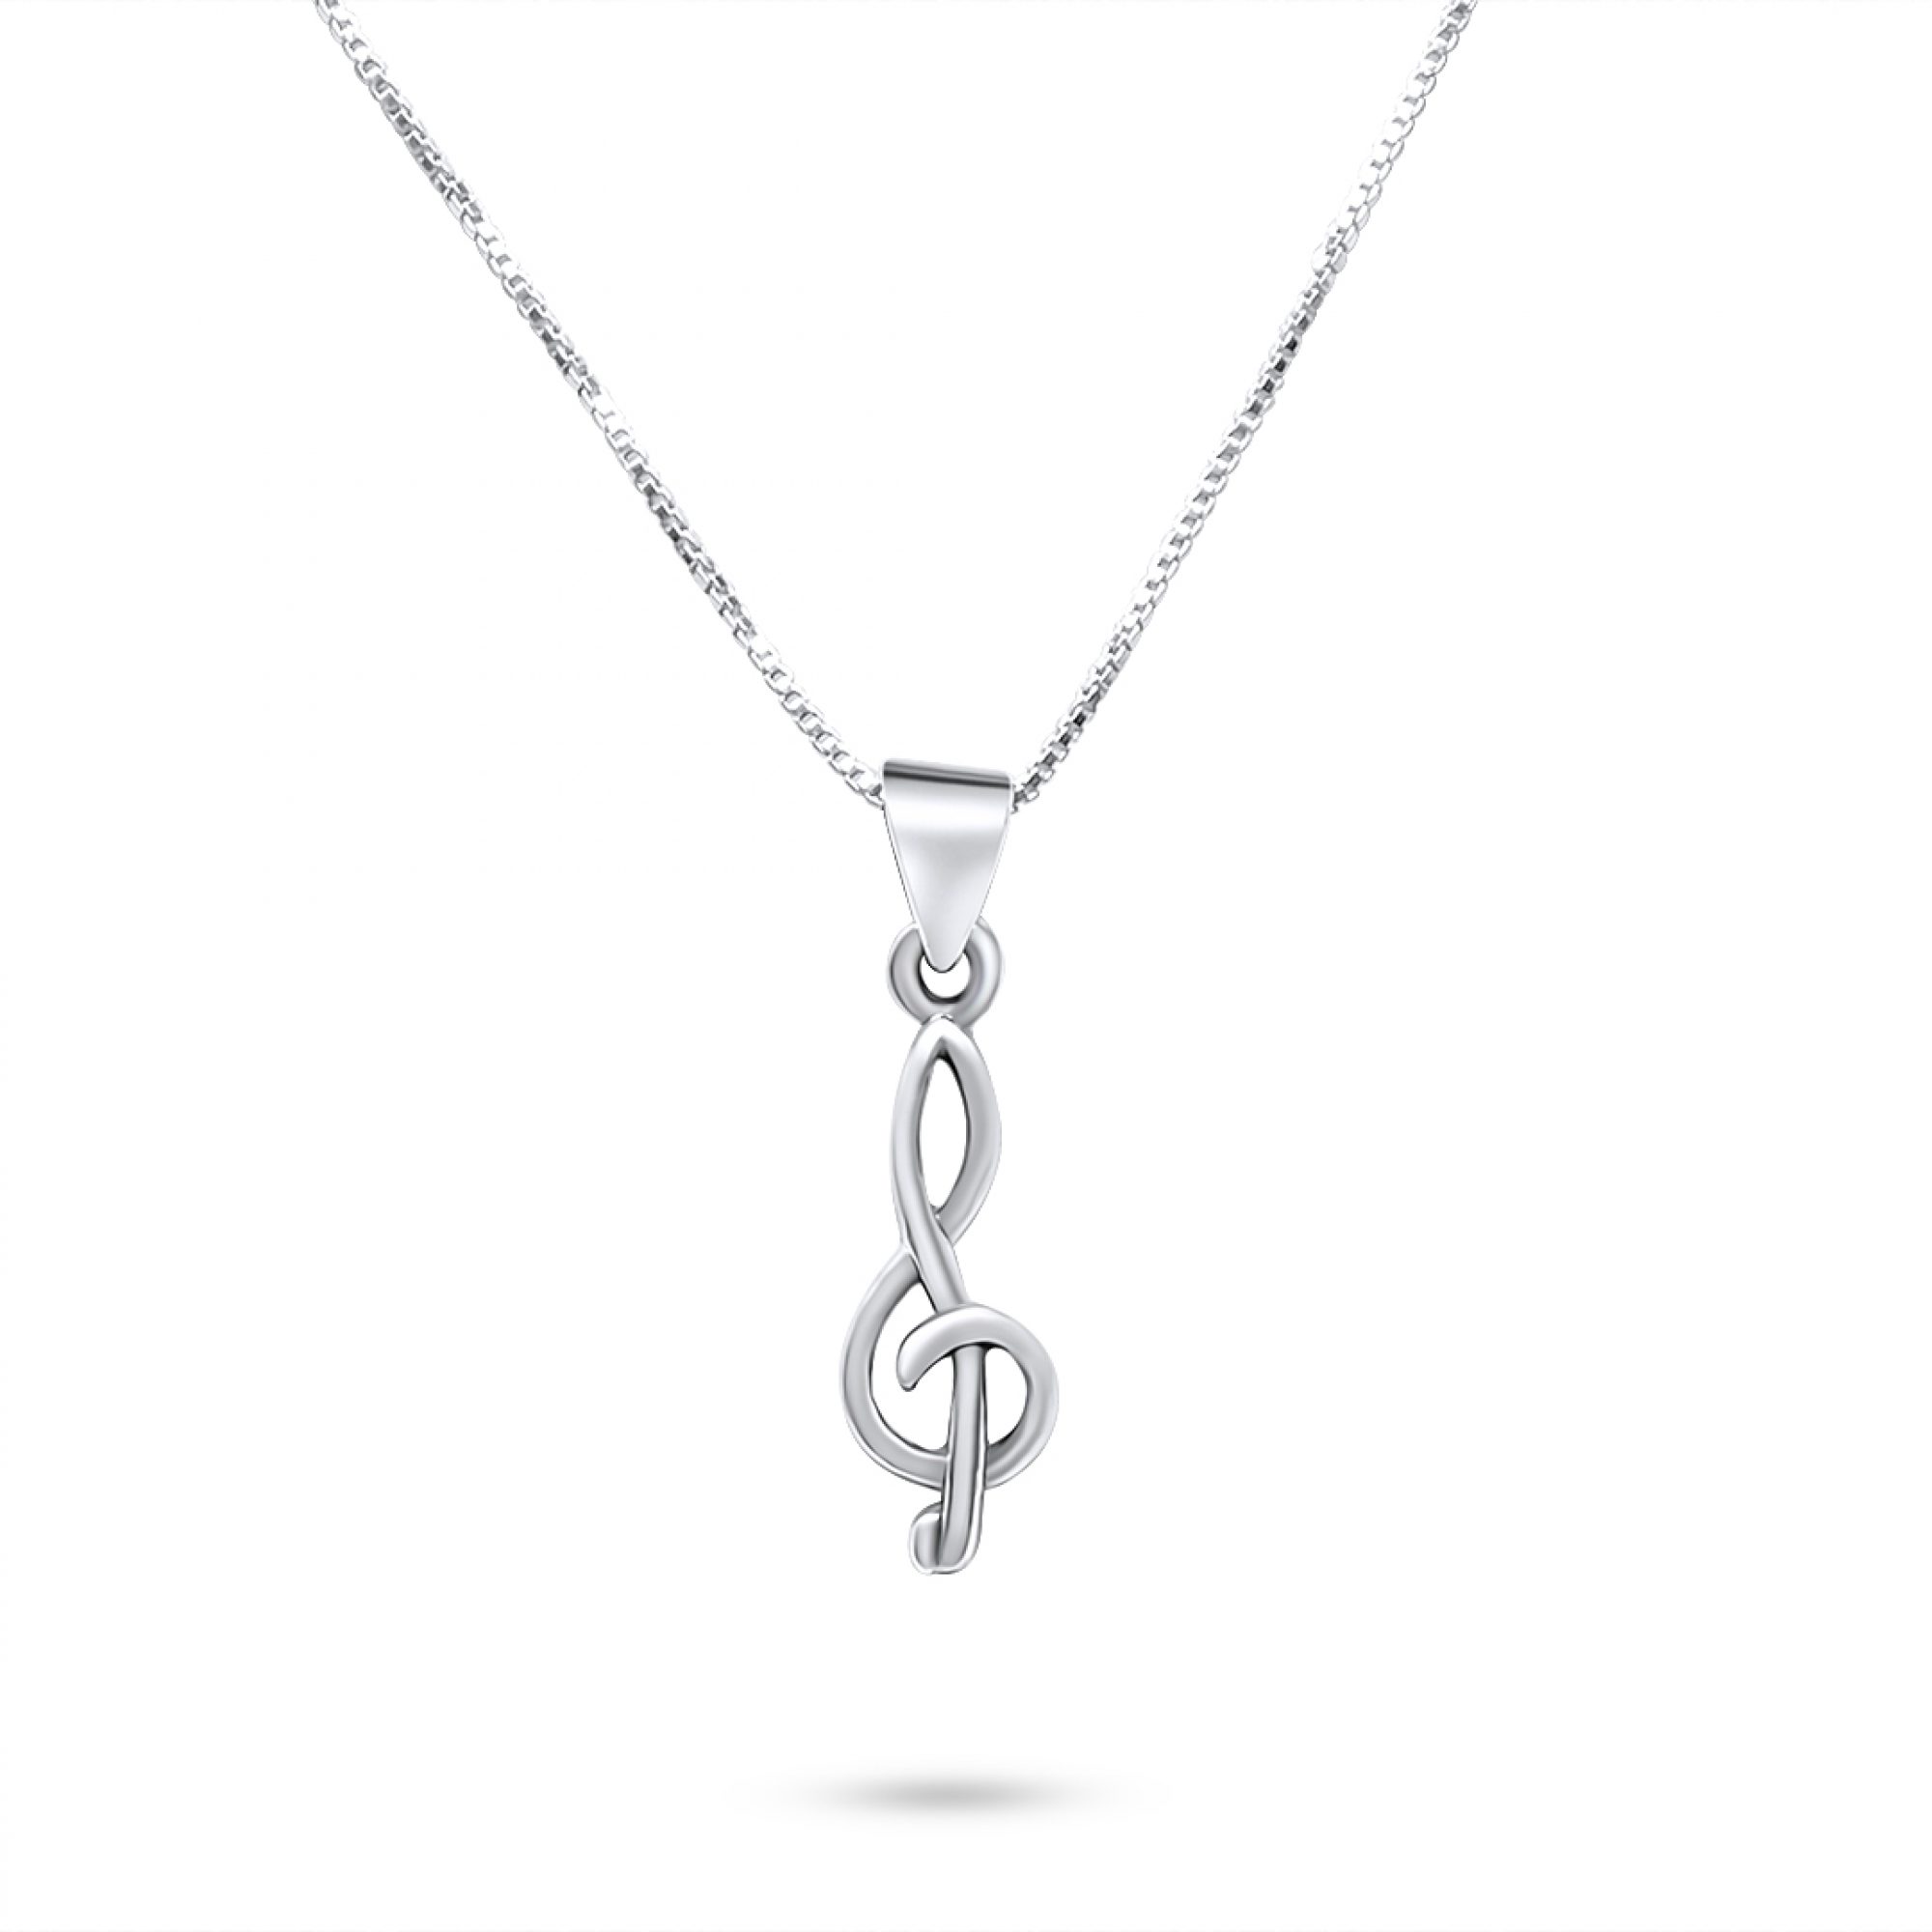 Treble clef necklace 